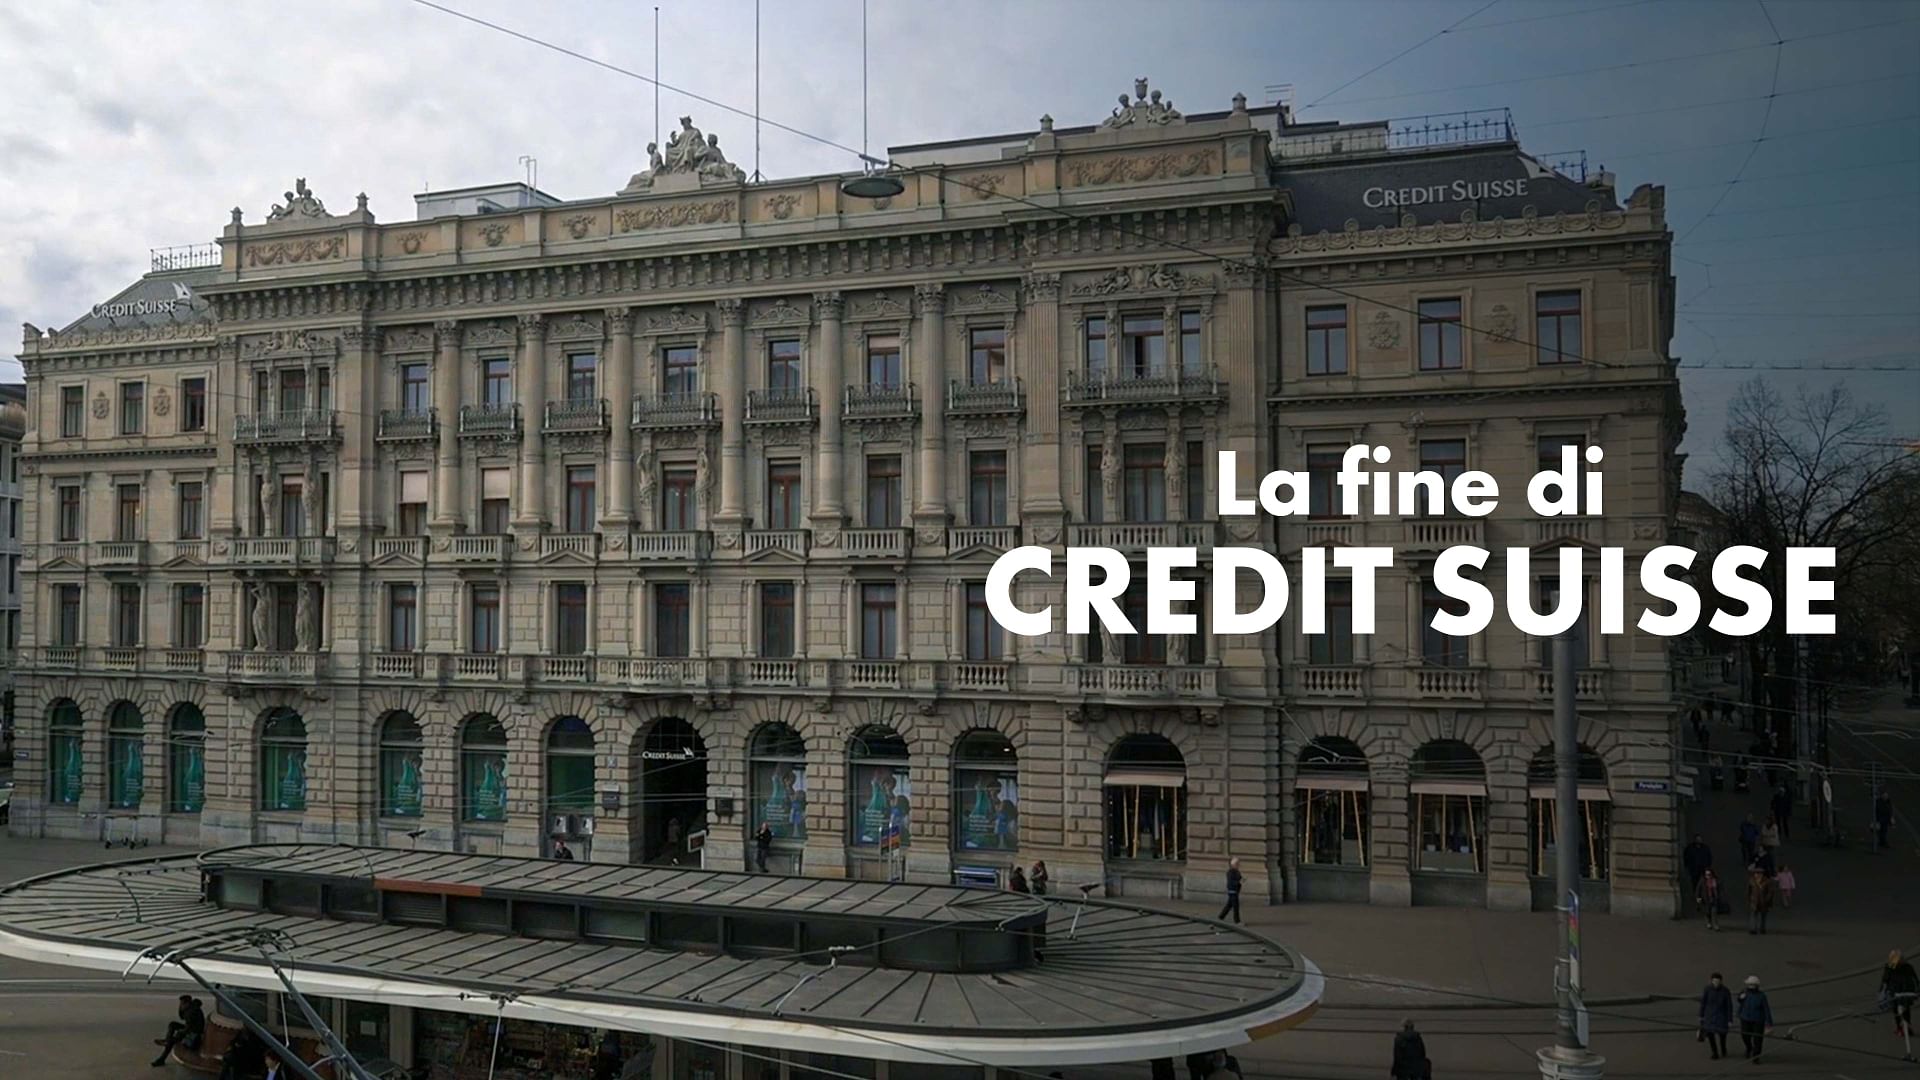 La fine di Credit Suisse